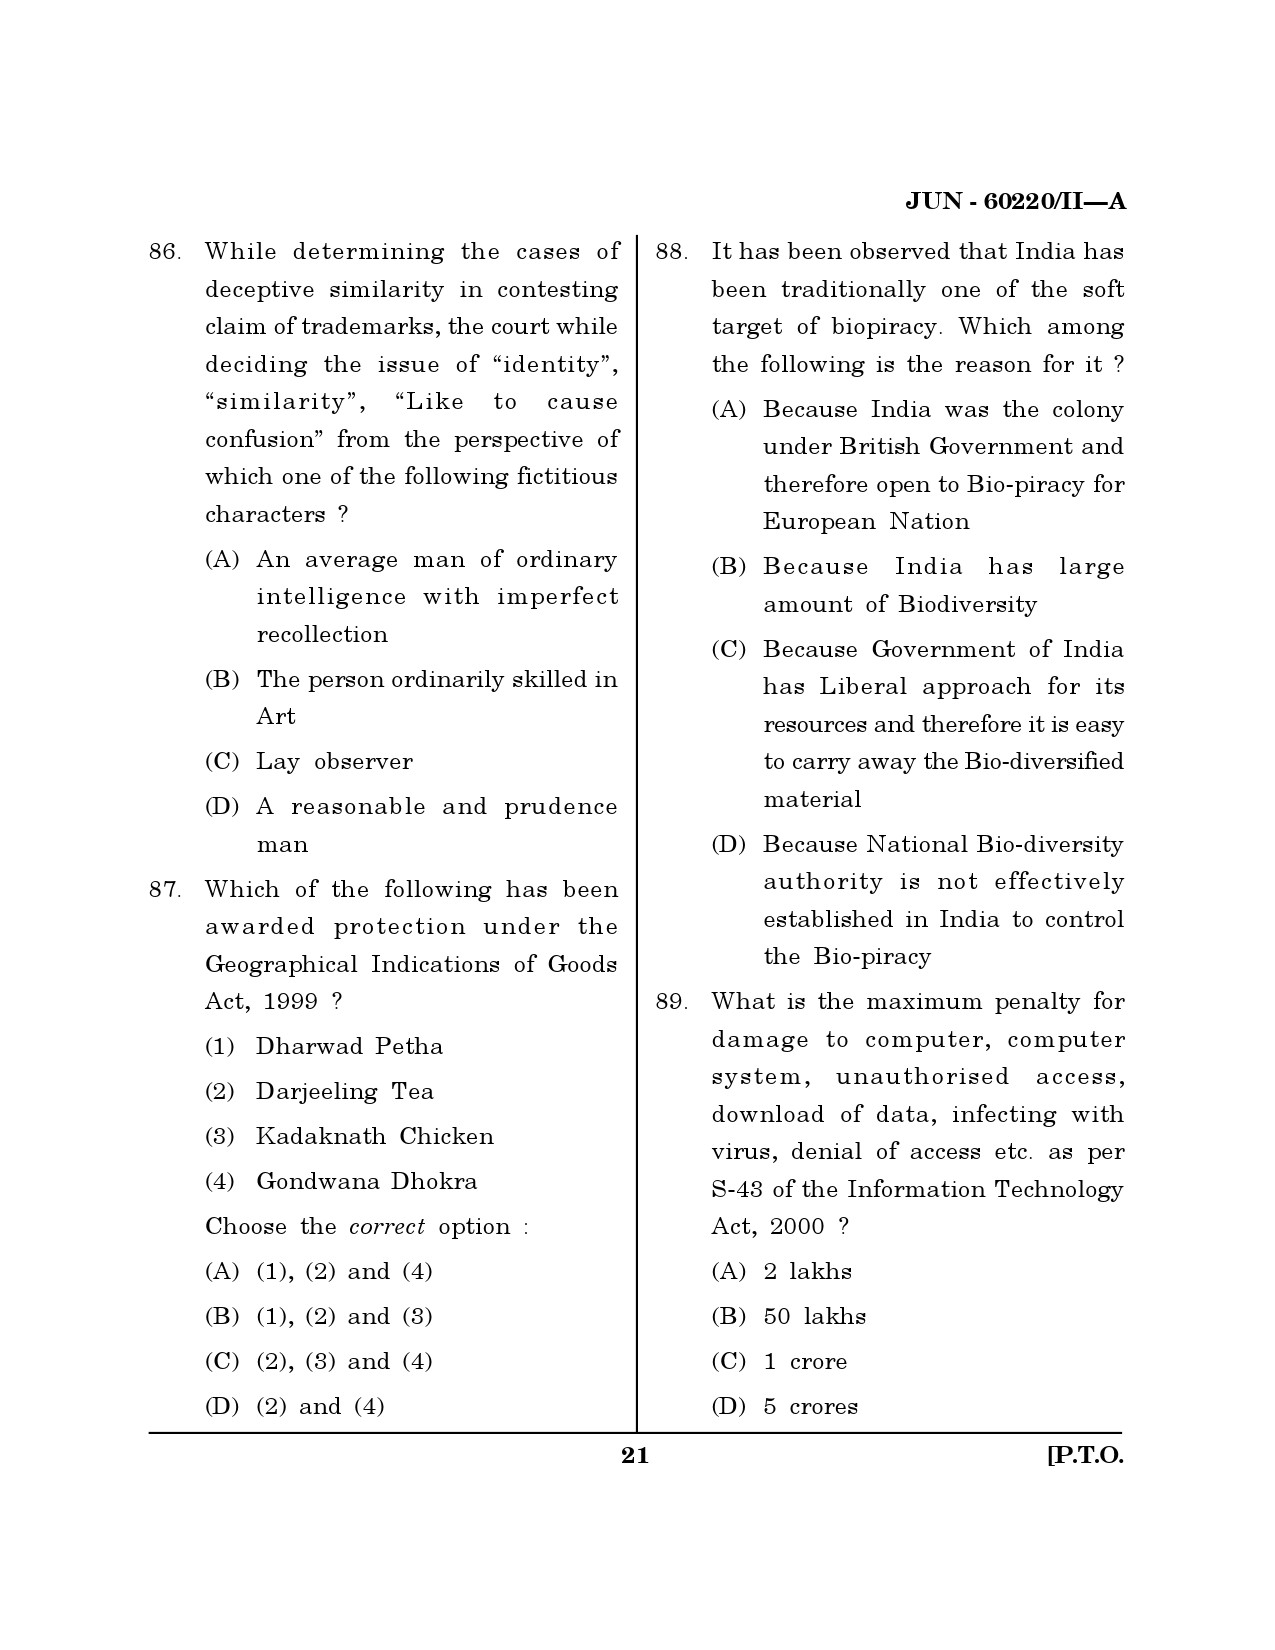 Maharashtra SET Law Question Paper II June 2020 20